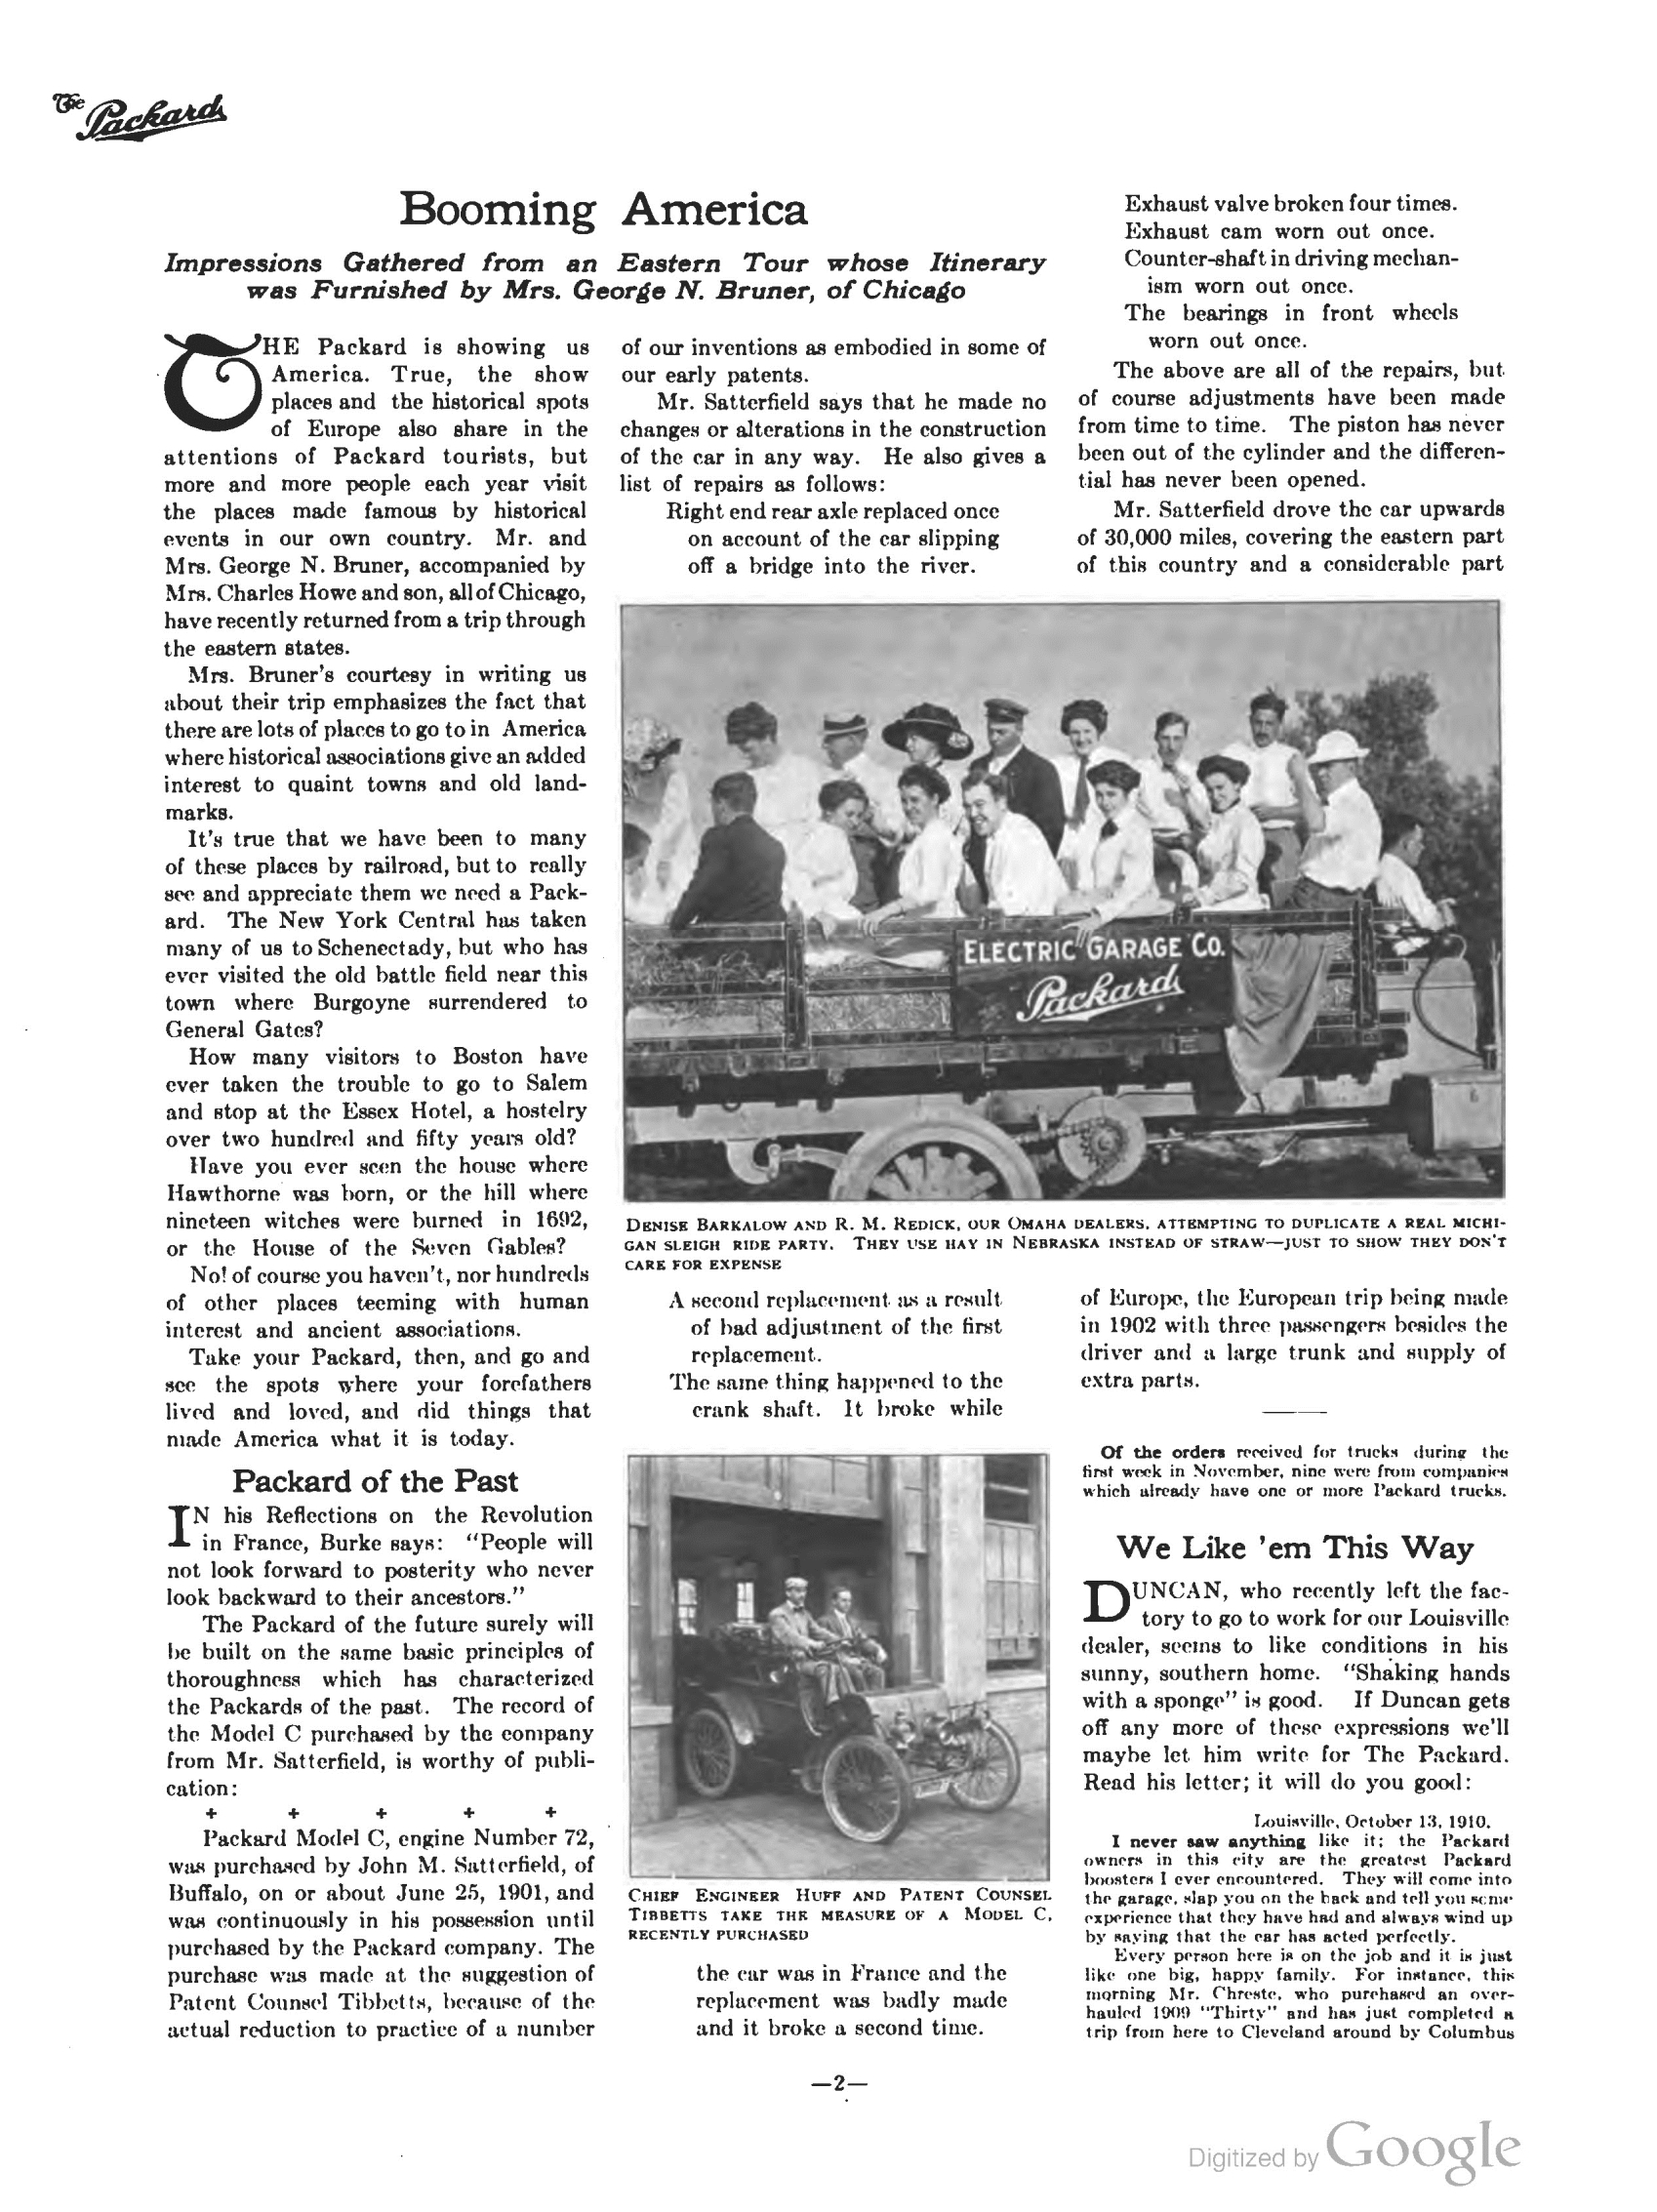 1910_The_Packard_Newsletter-216